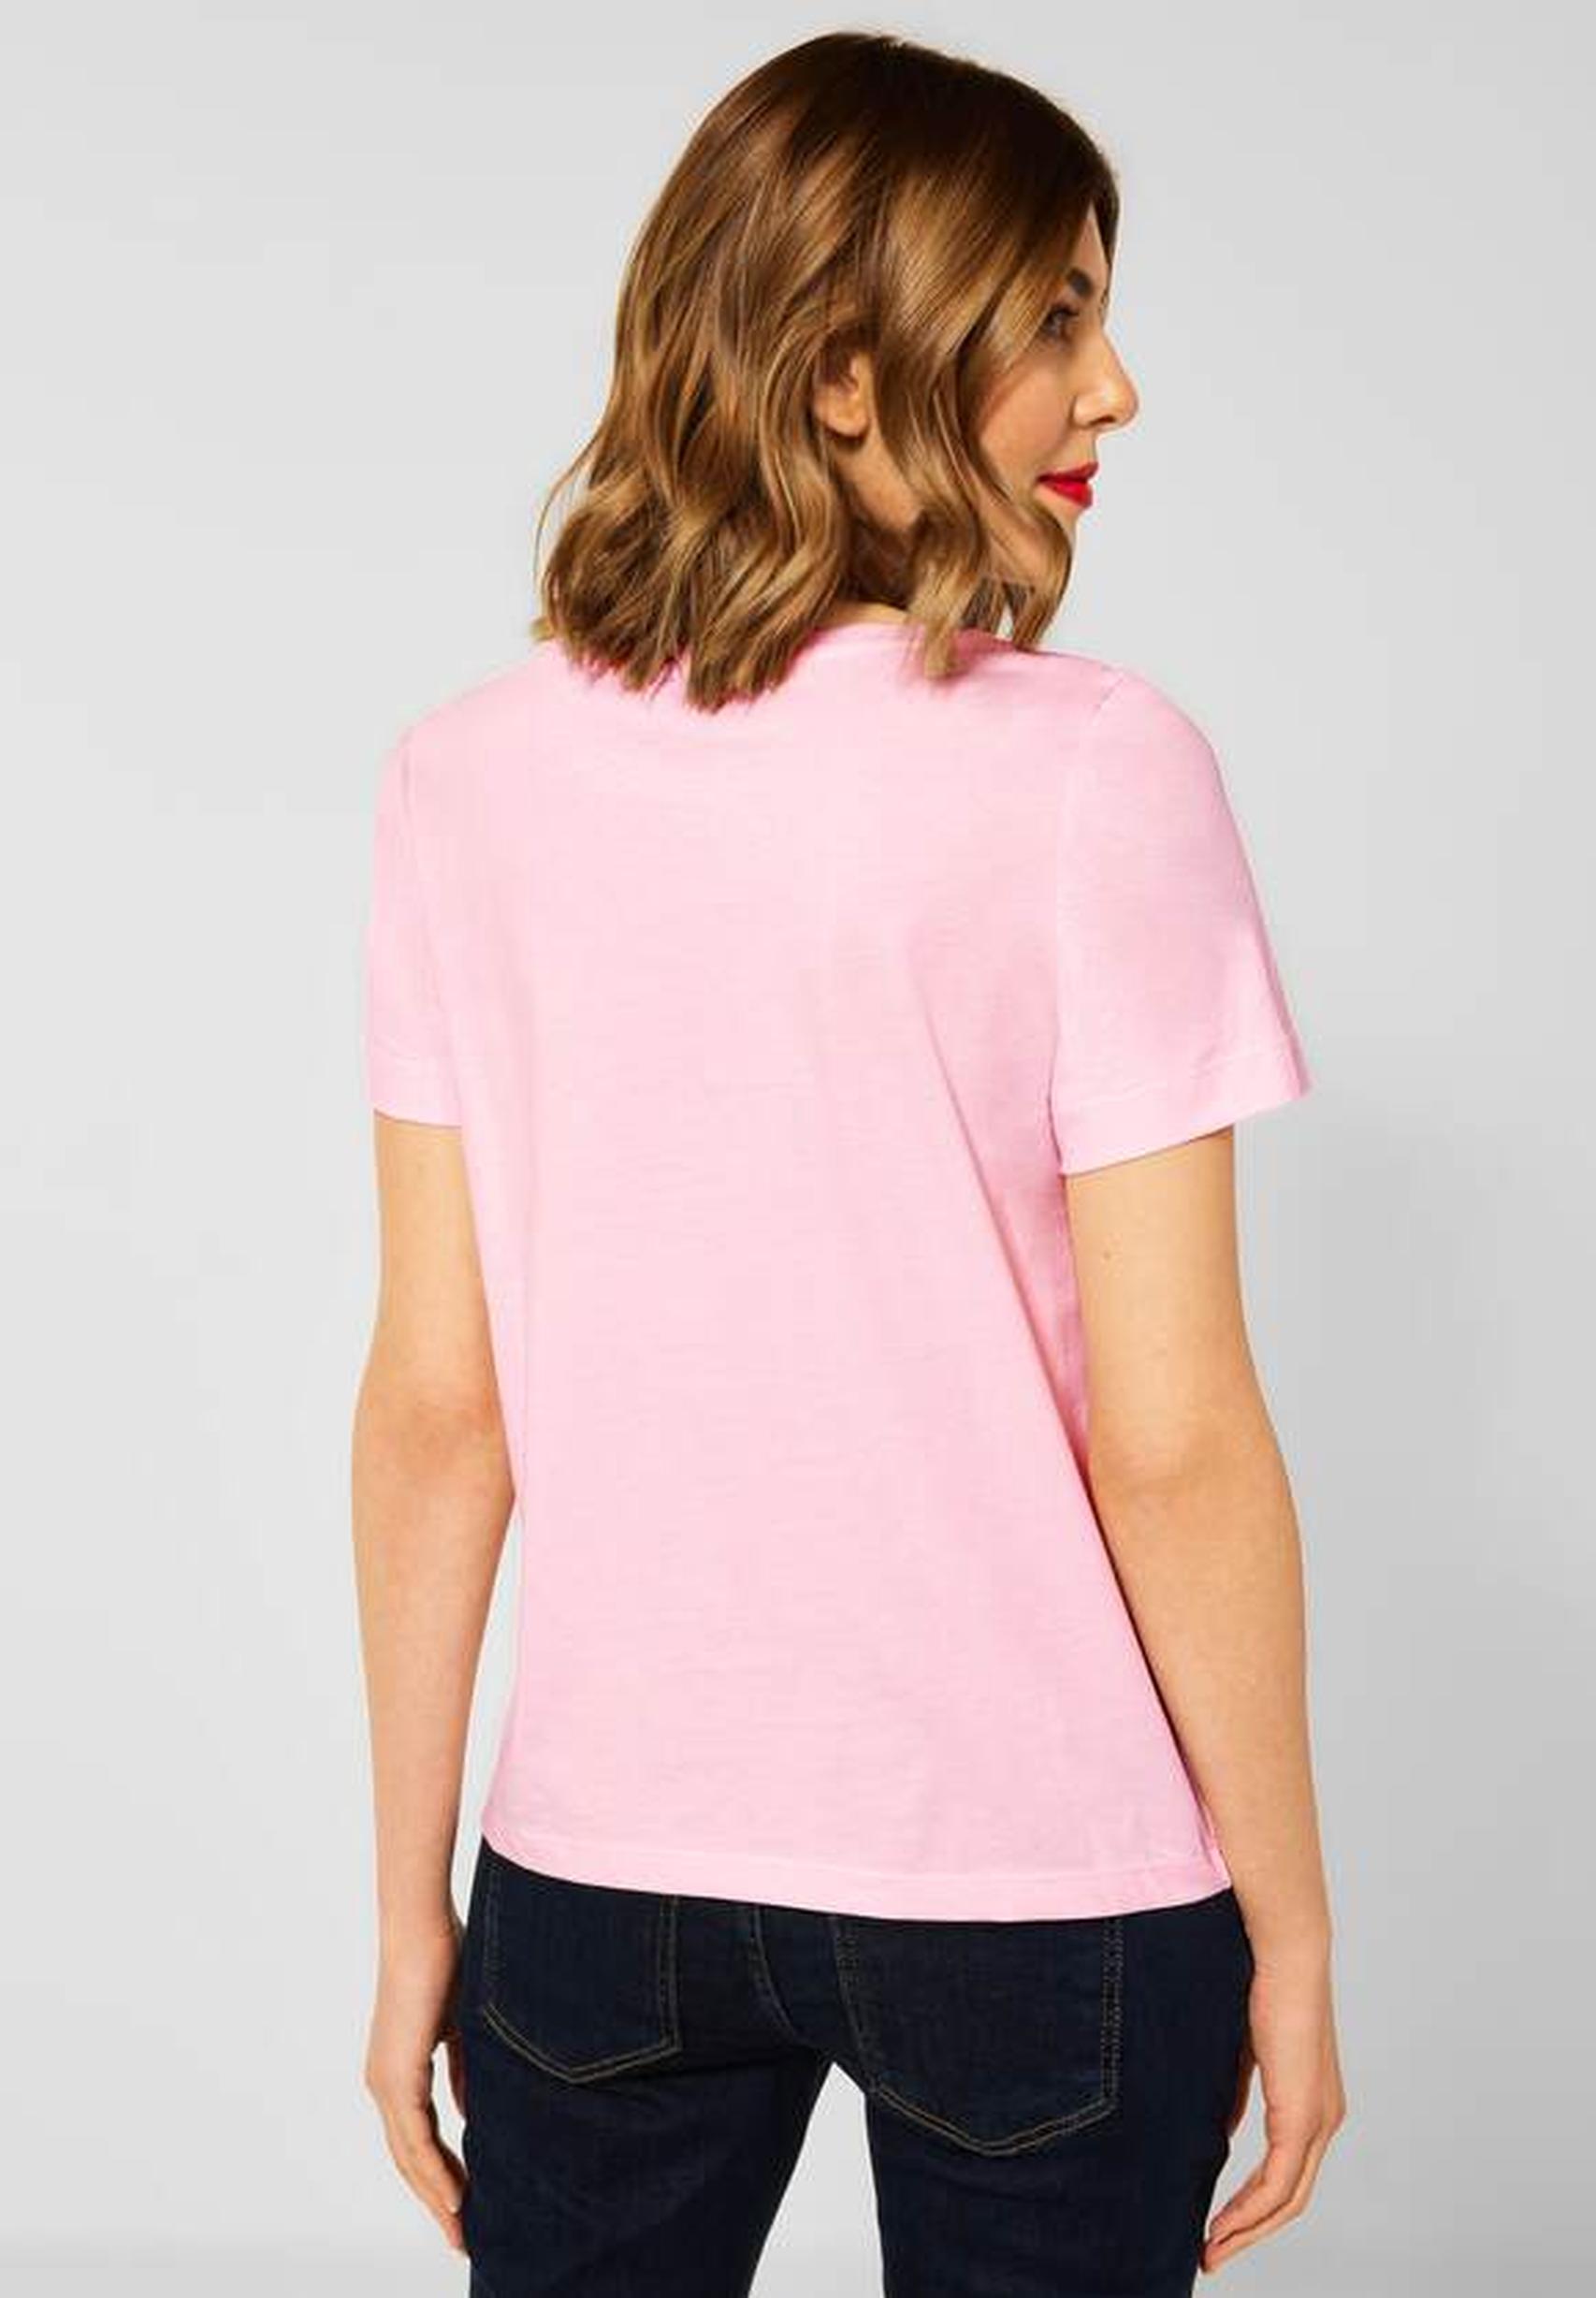 in - rose aus der Trendiges icy Street T-Shirt Kollektion 317605 von One